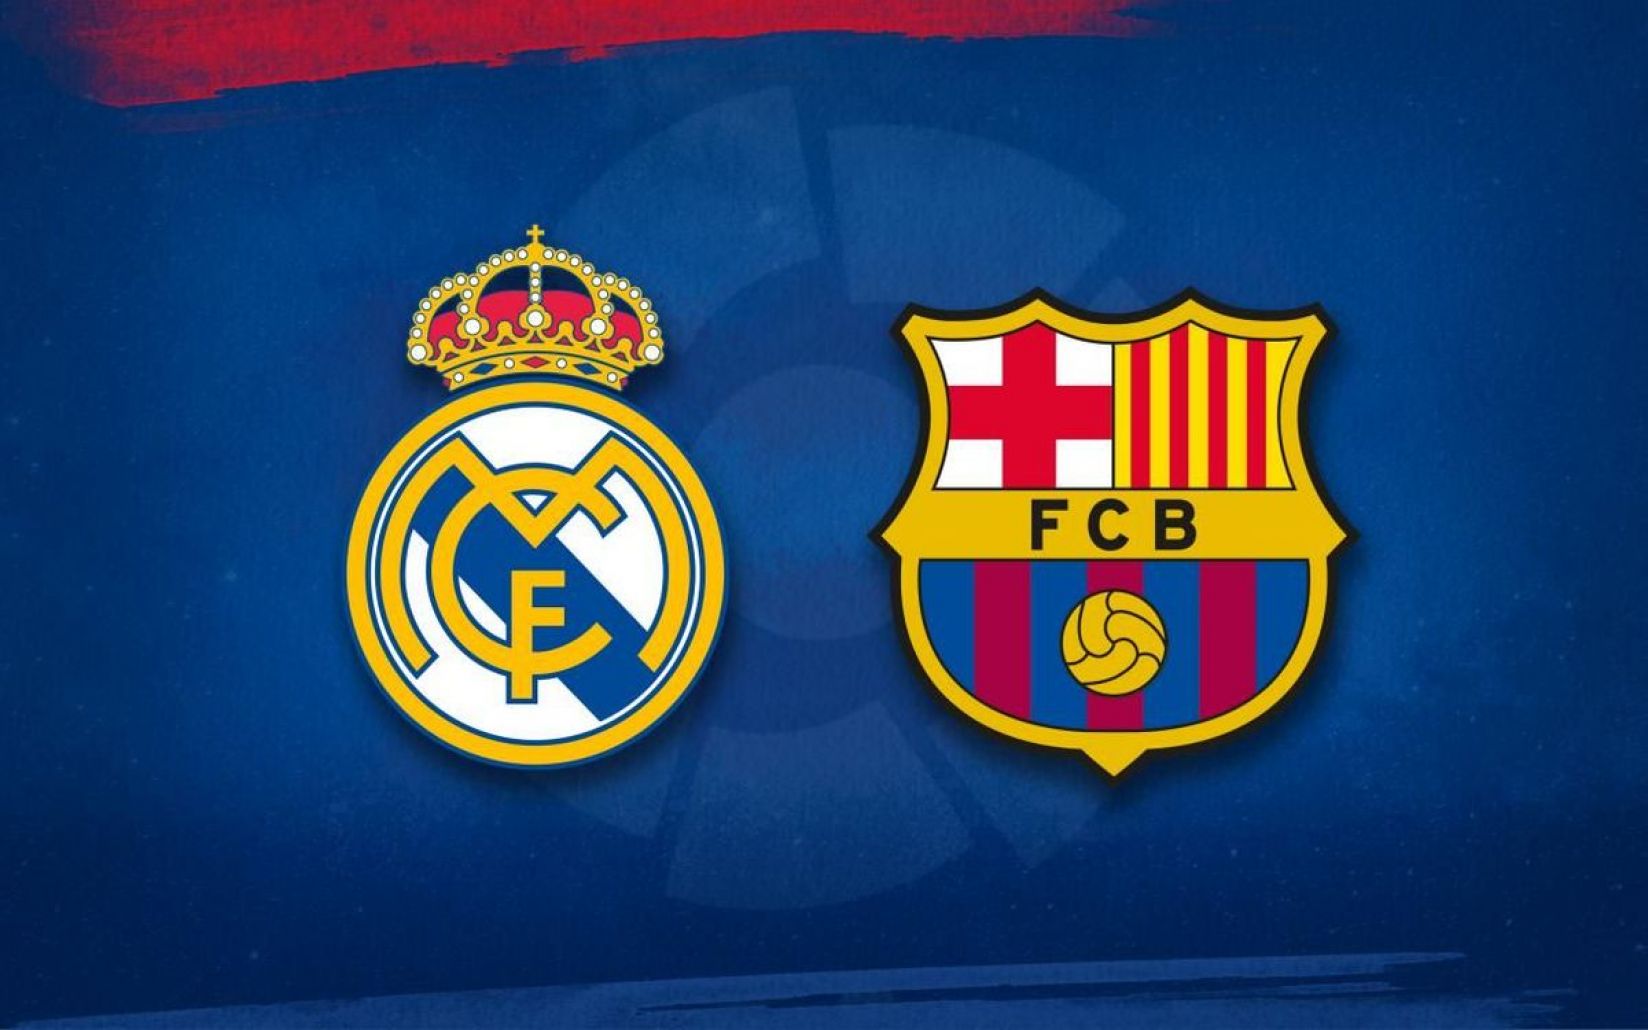 أفضل الروابط لمشاهدة مباراة الكلاسيكو بين ريال مدريد وبرشلونة بجودة عالية